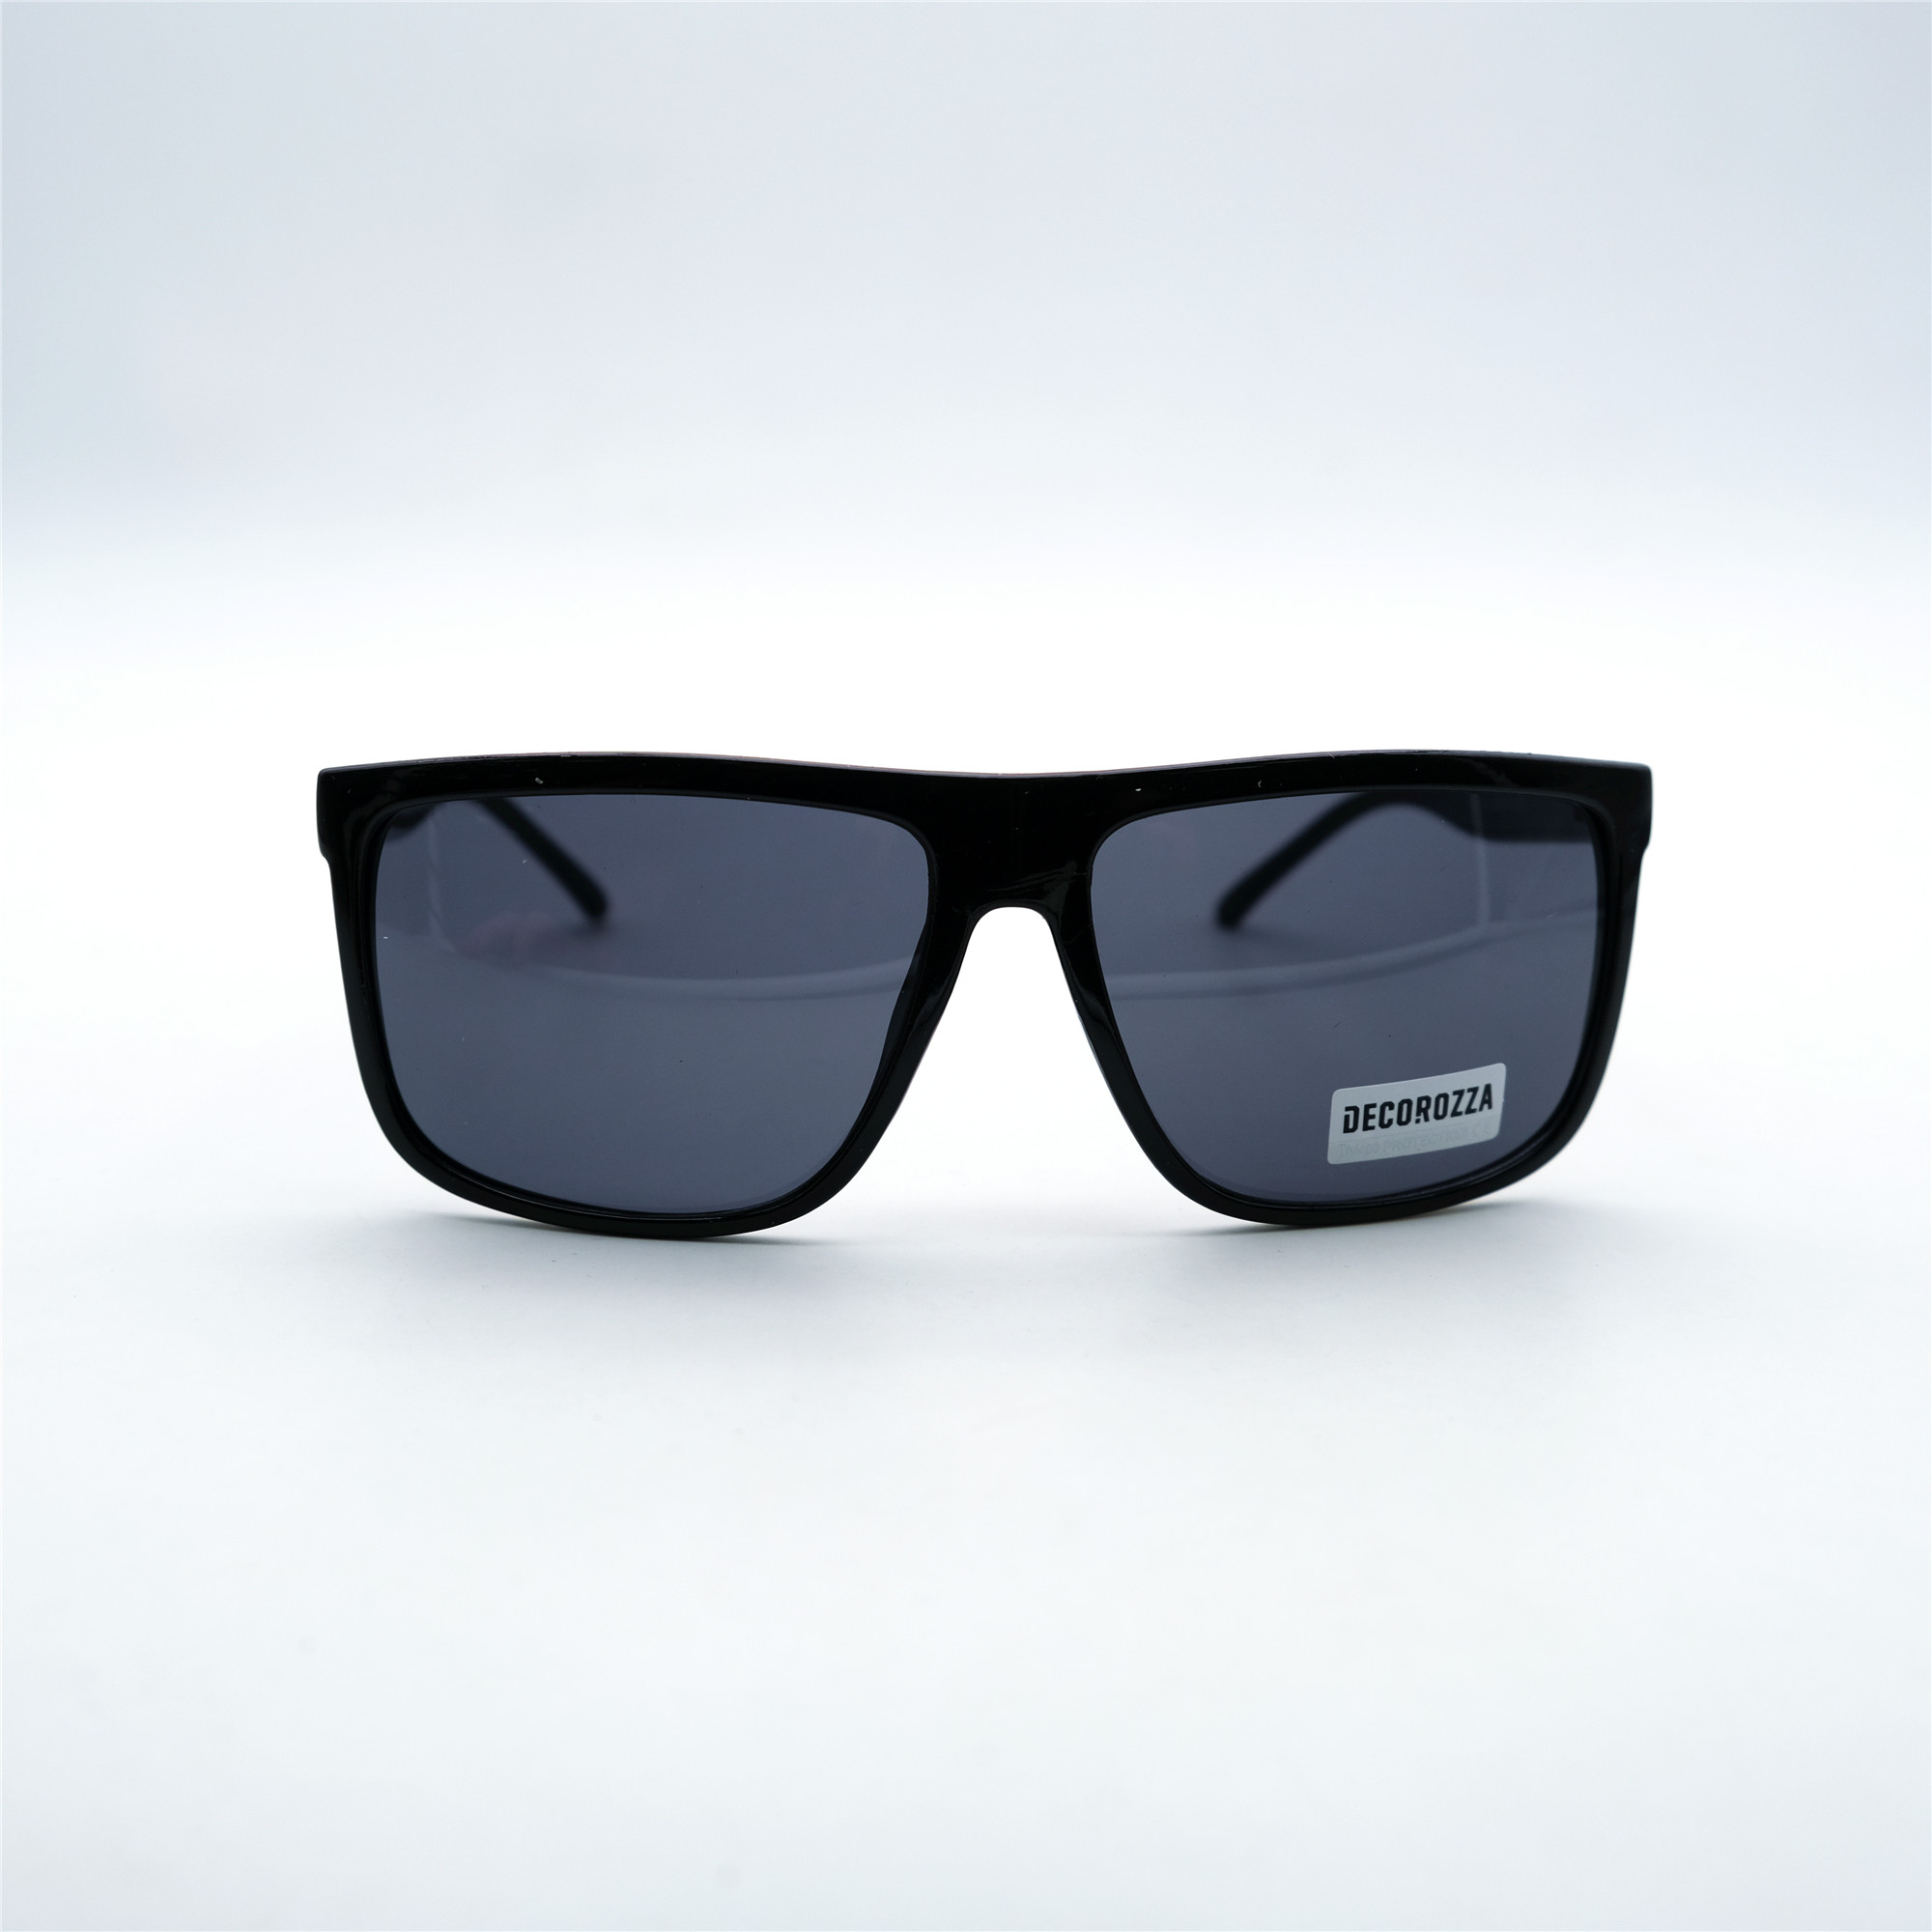  Солнцезащитные очки картинка Мужские Decorozza  Квадратные D1014-C1 